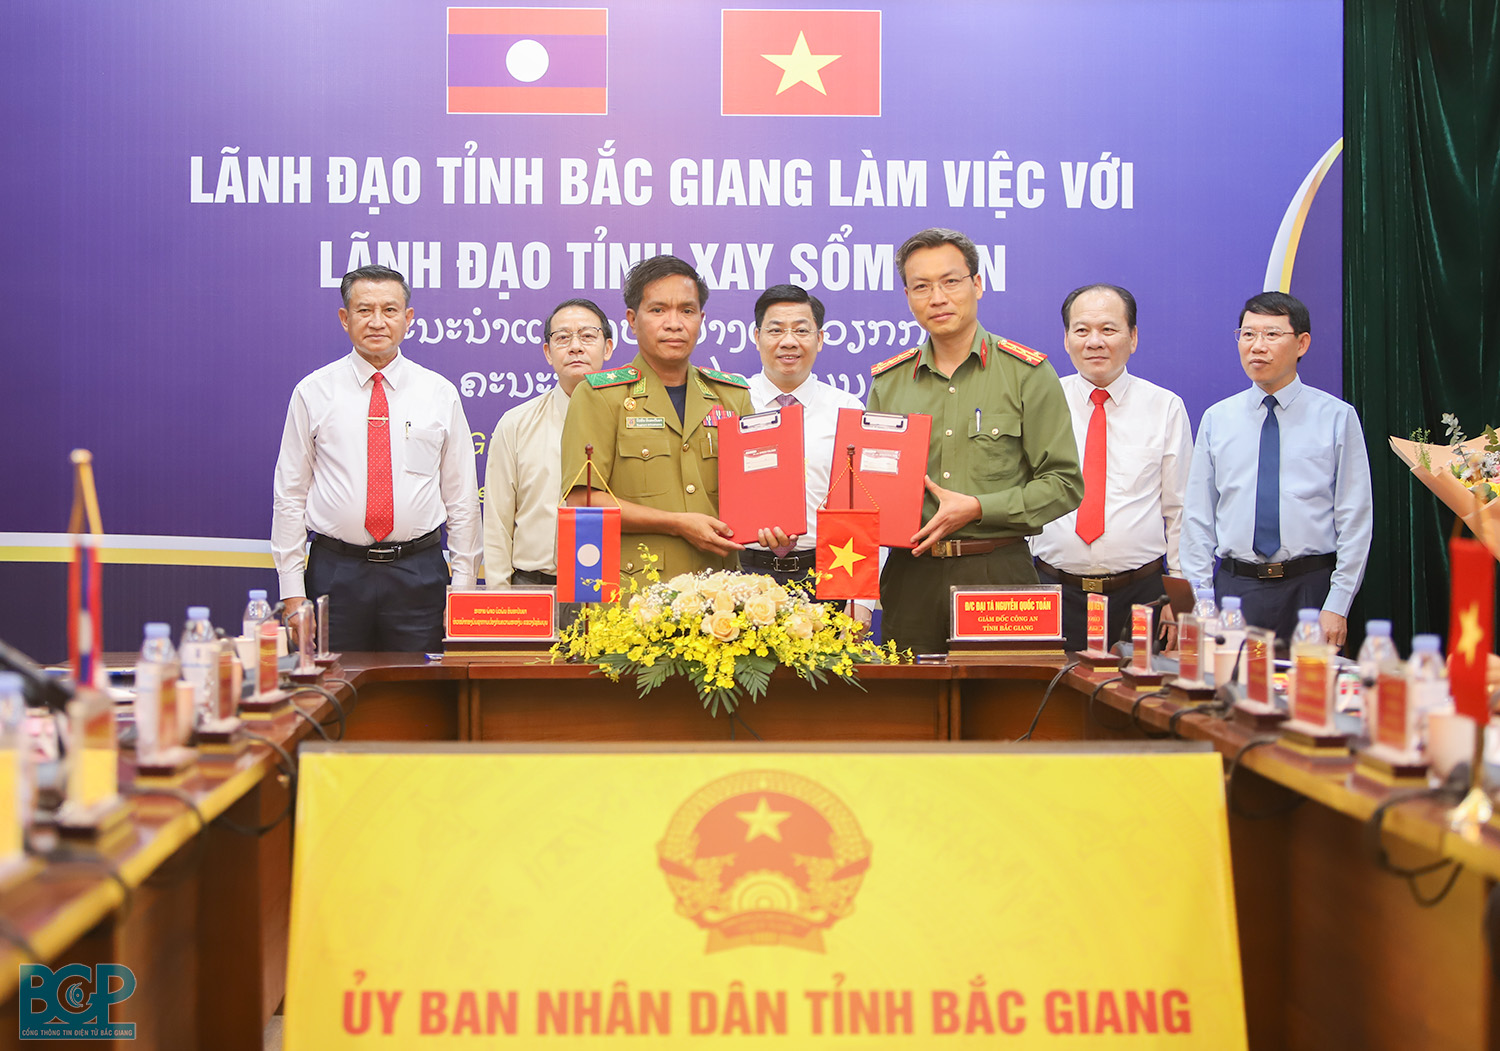 Đoàn đại biểu cấp cao tỉnh Xay Sổm Bun - Lào tham quan, tìm hiểu thực tế tại Bắc Giang